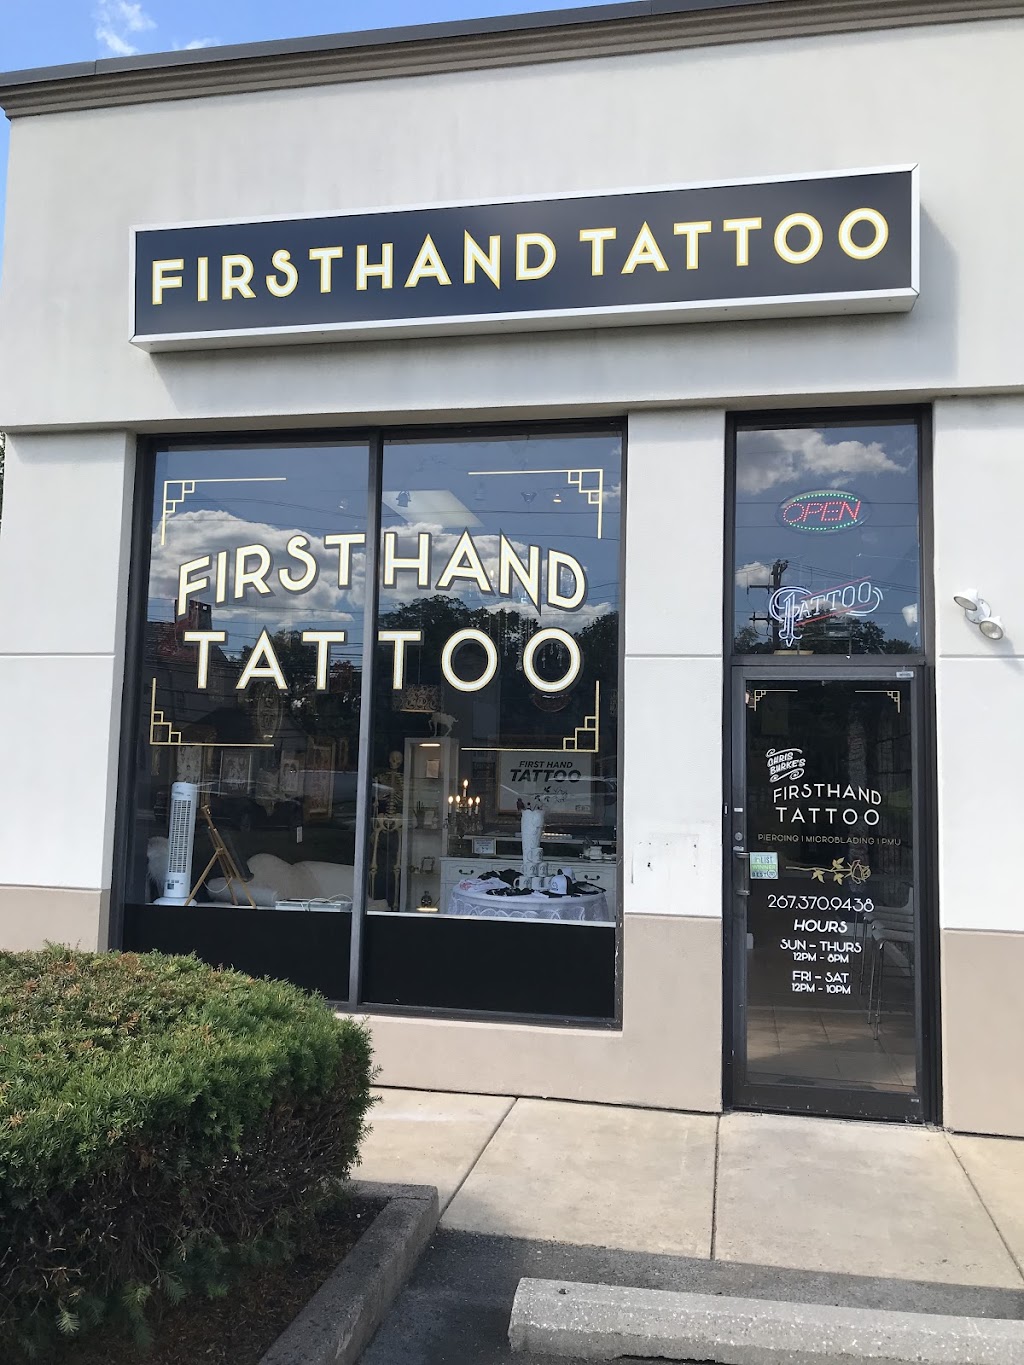 First Hand Tattoo | 315 E Street Rd, Warminster, PA 18974 | Phone: (267) 370-9438